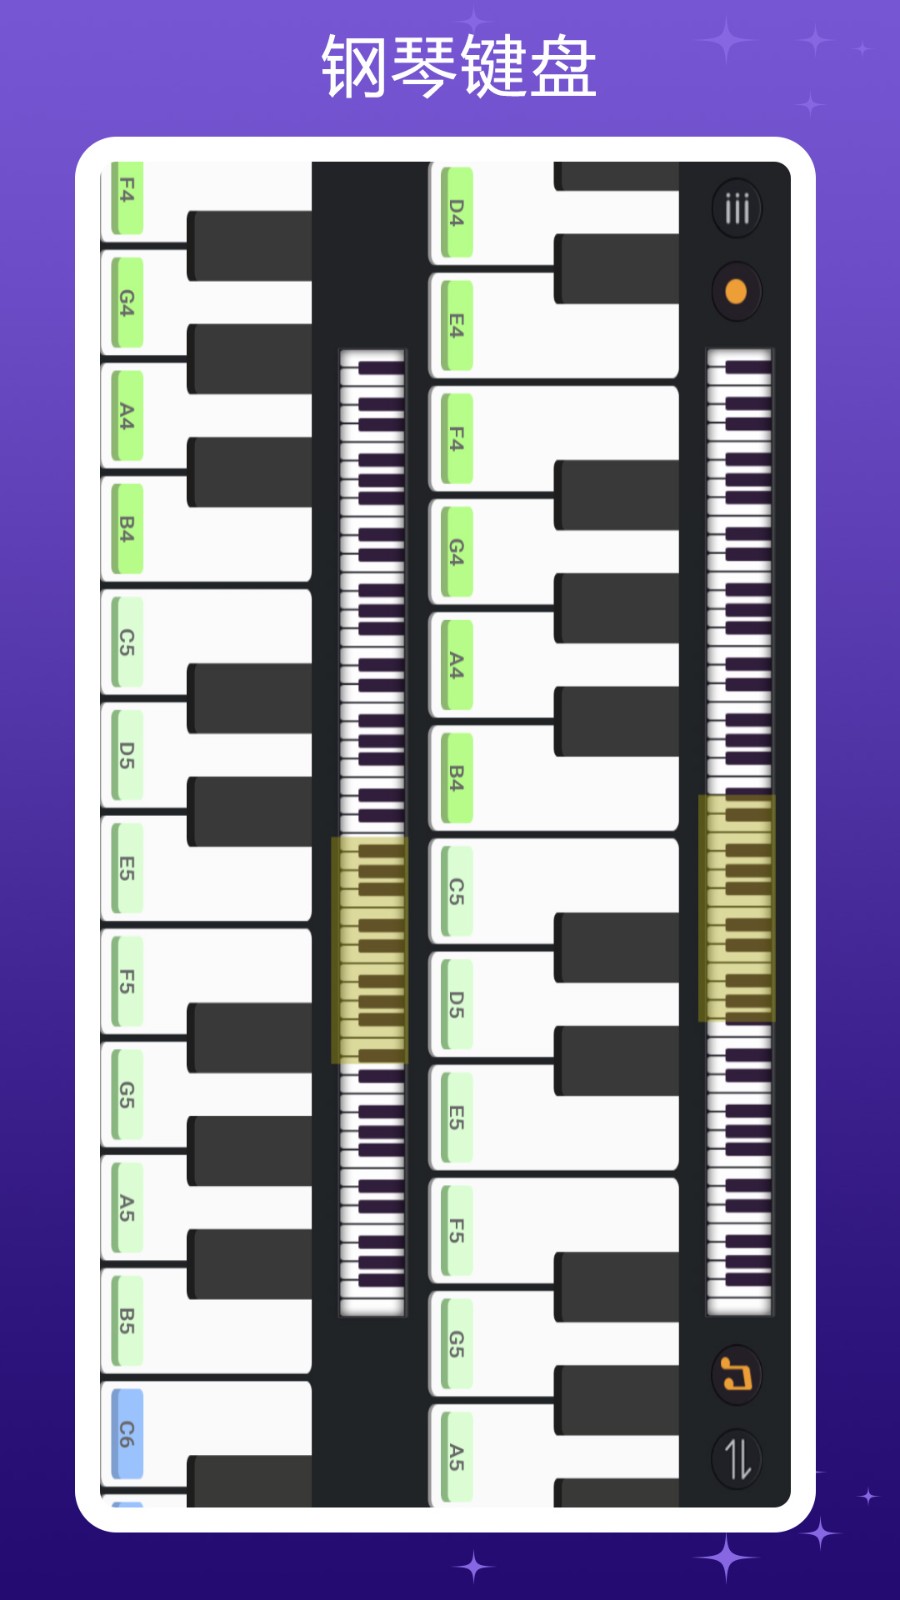 全键盘模拟钢琴下载手机版安装